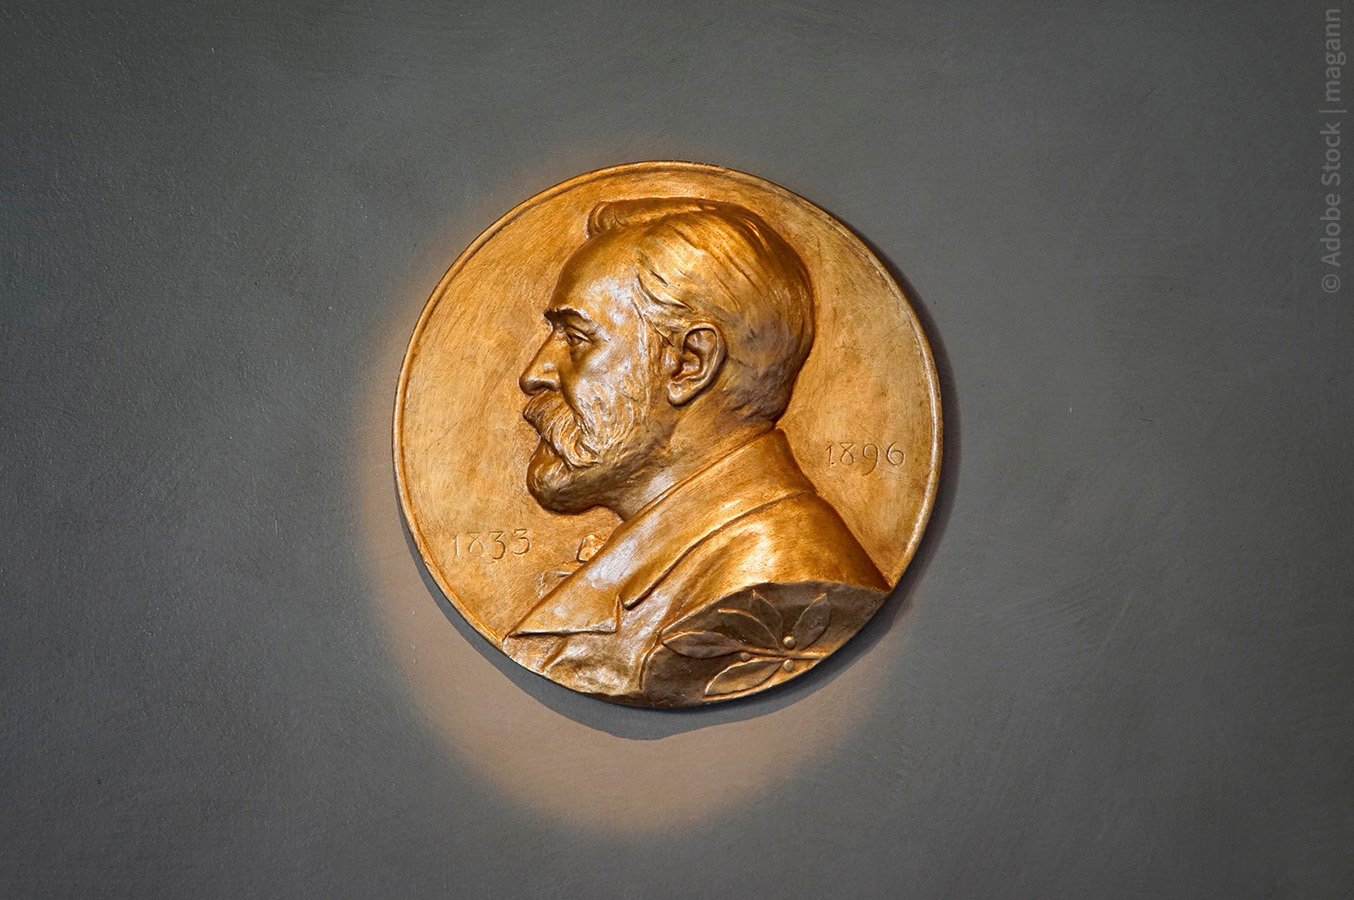 Skulptur des schwedischen Nobelpreises; Adobestock/magann